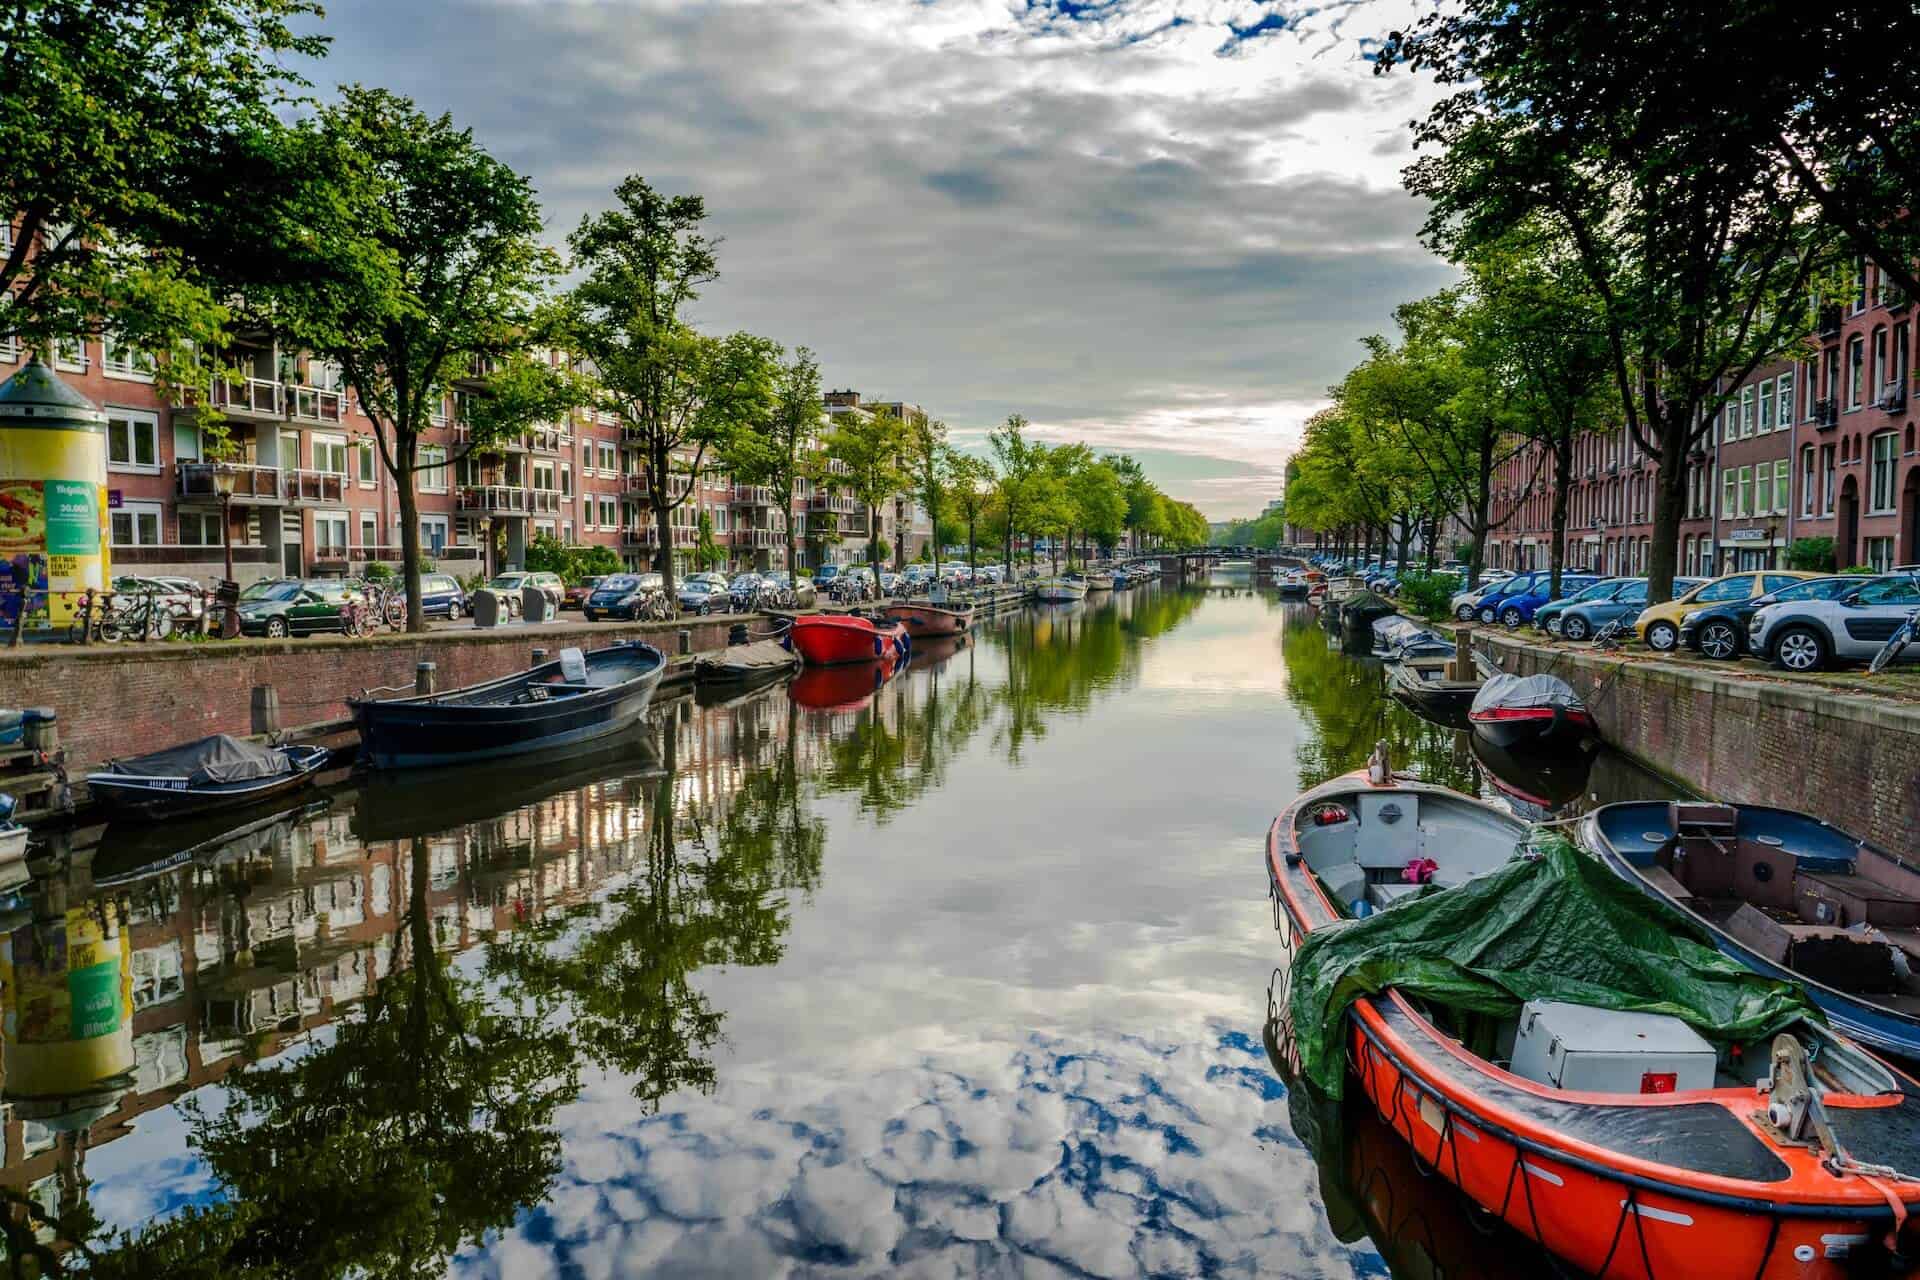 Vegan reisen in den Niederlanden: 6 Tipps für deine nächste Reise!